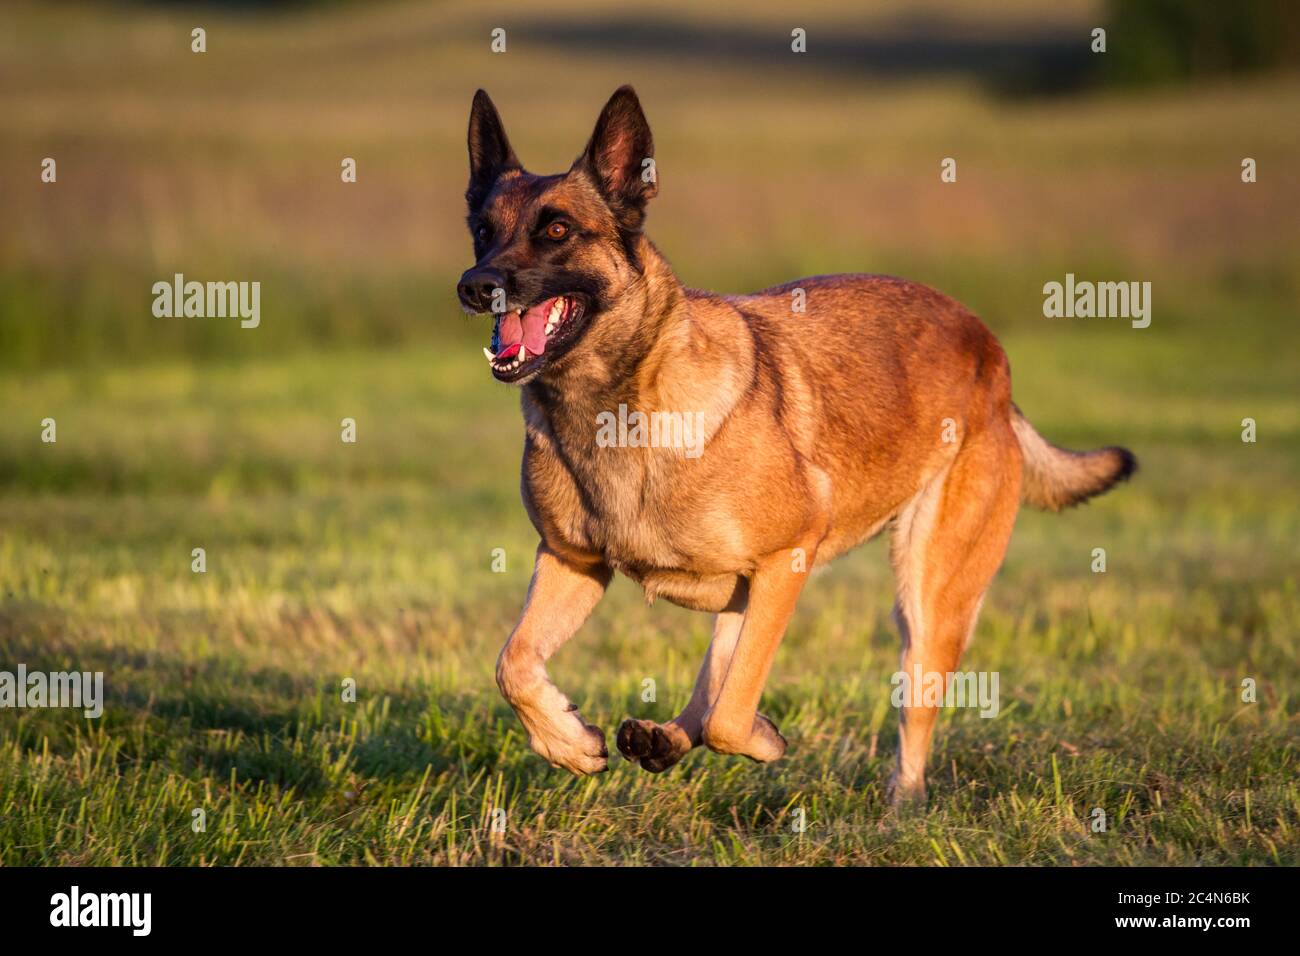 Belgian Shepherd Dog (Malinois) running Stock Photo